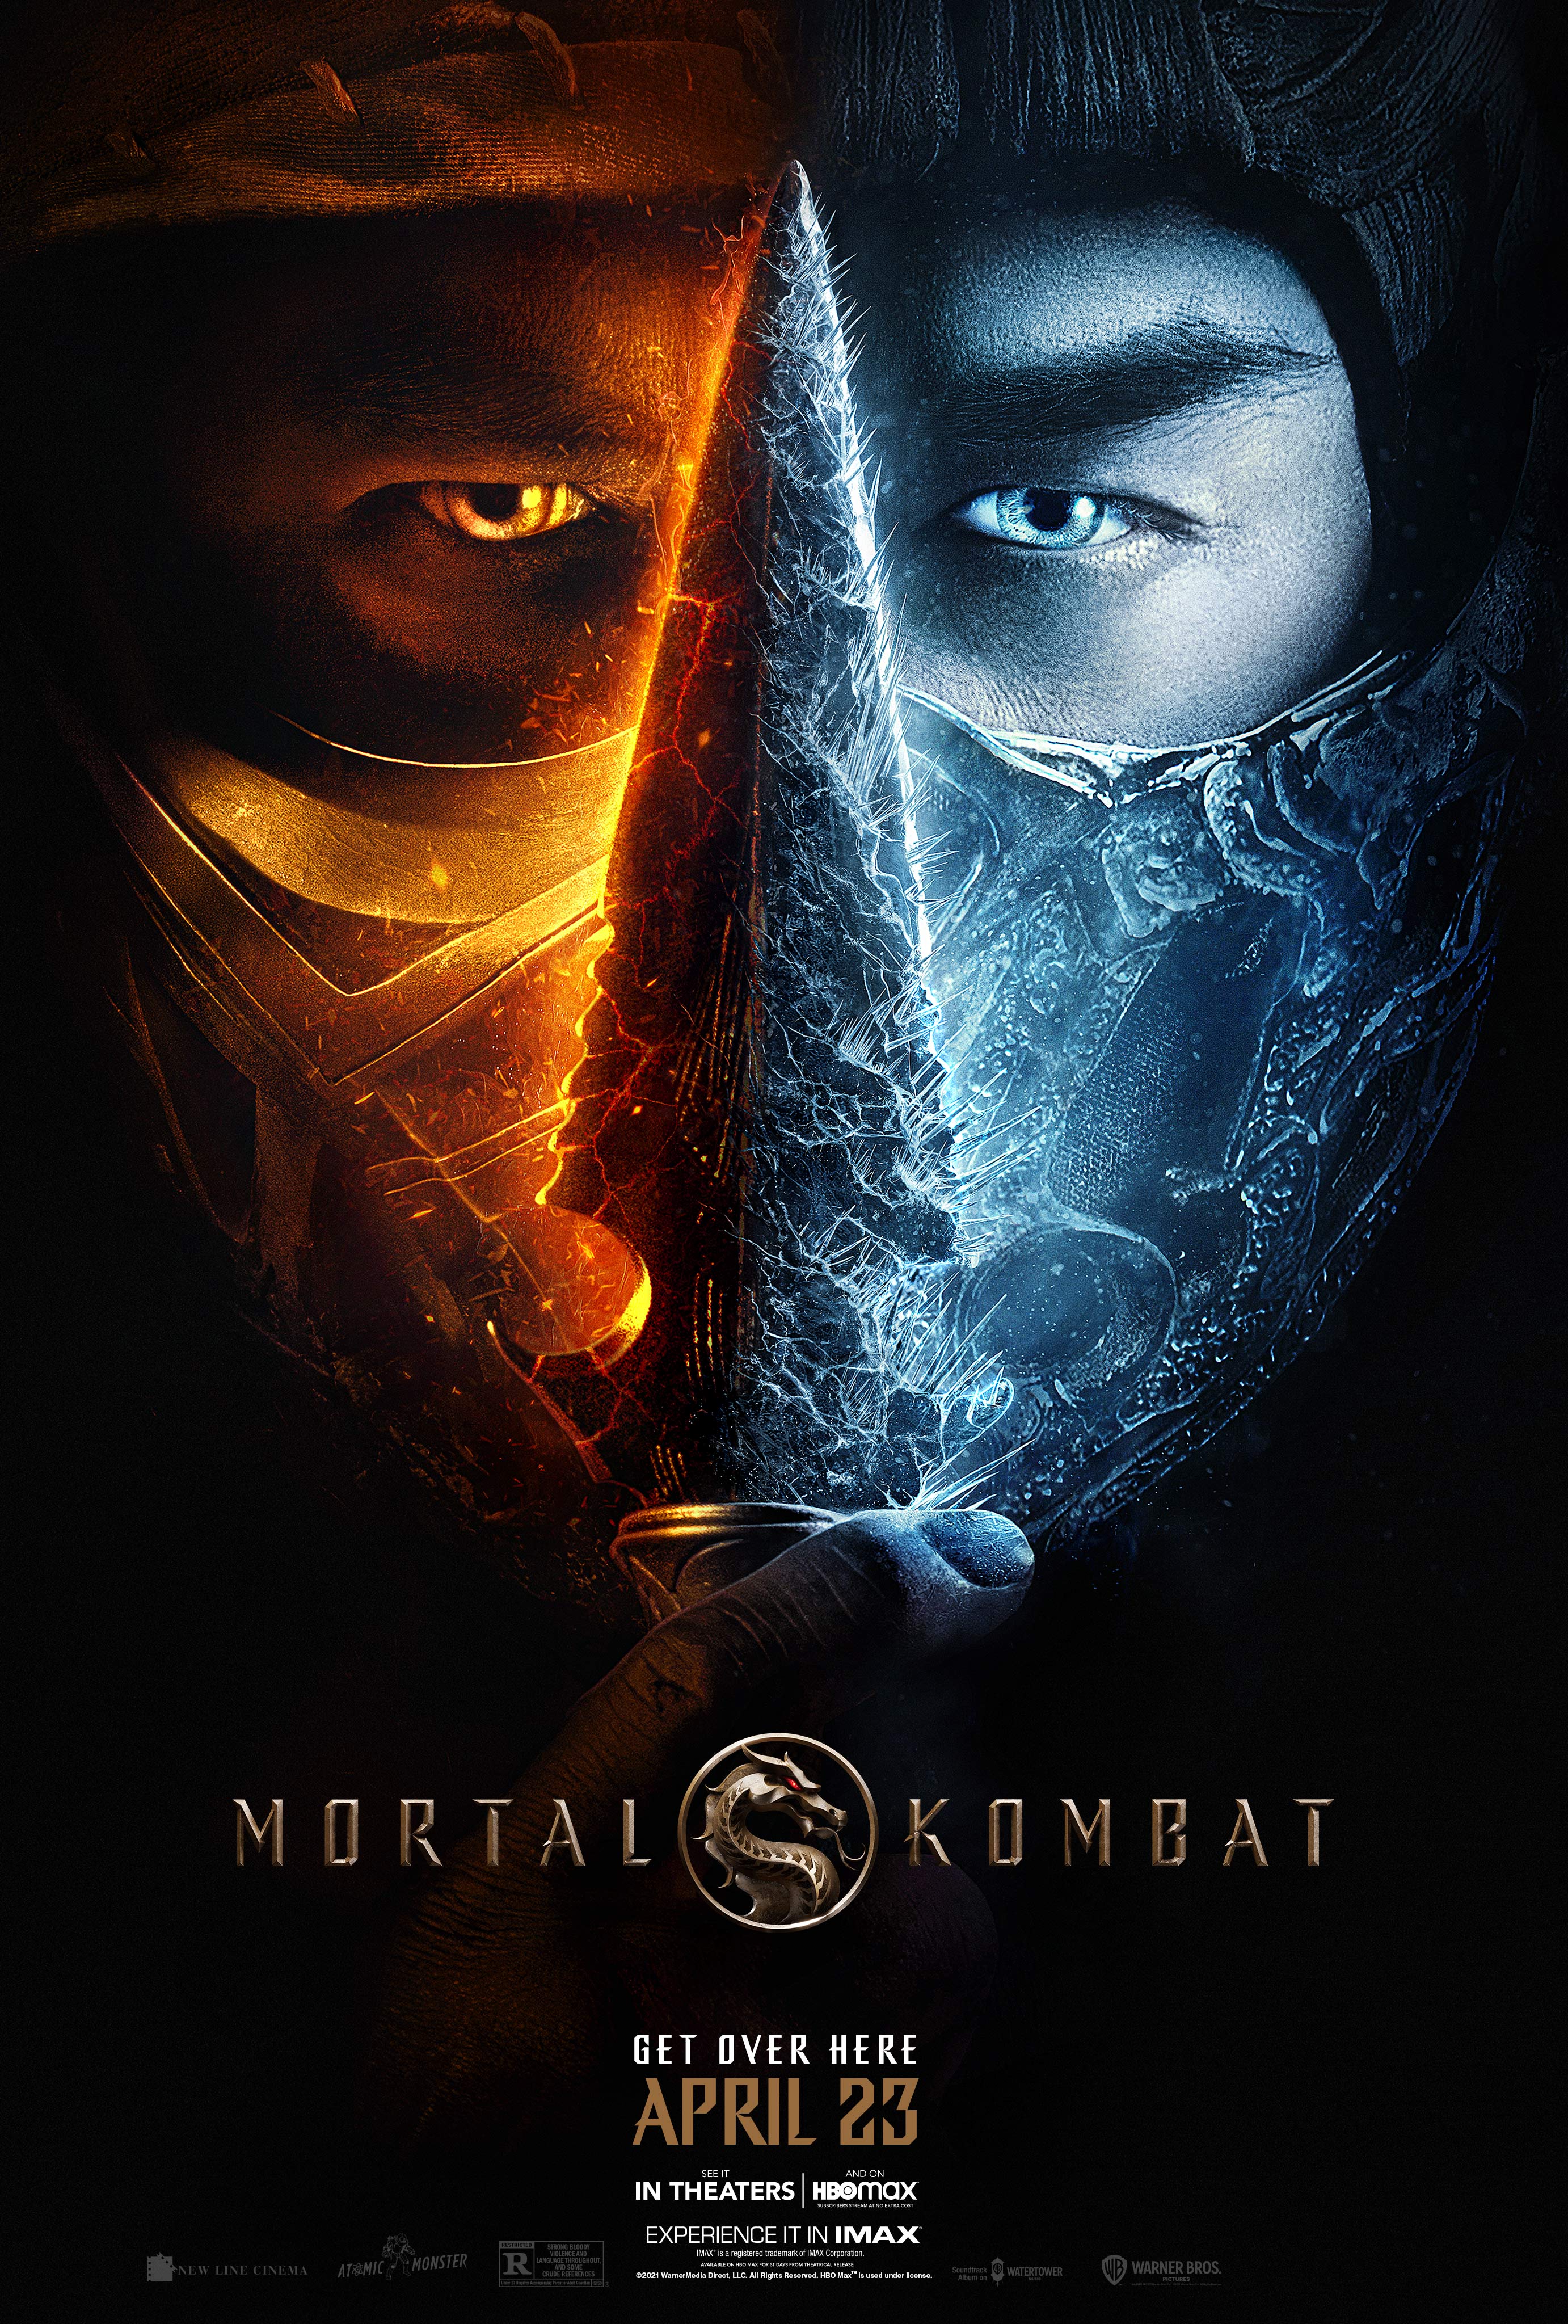 Stiahni si Filmy bez titulků Mortal Kombat (2021)[Webrip] = CSFD 86%